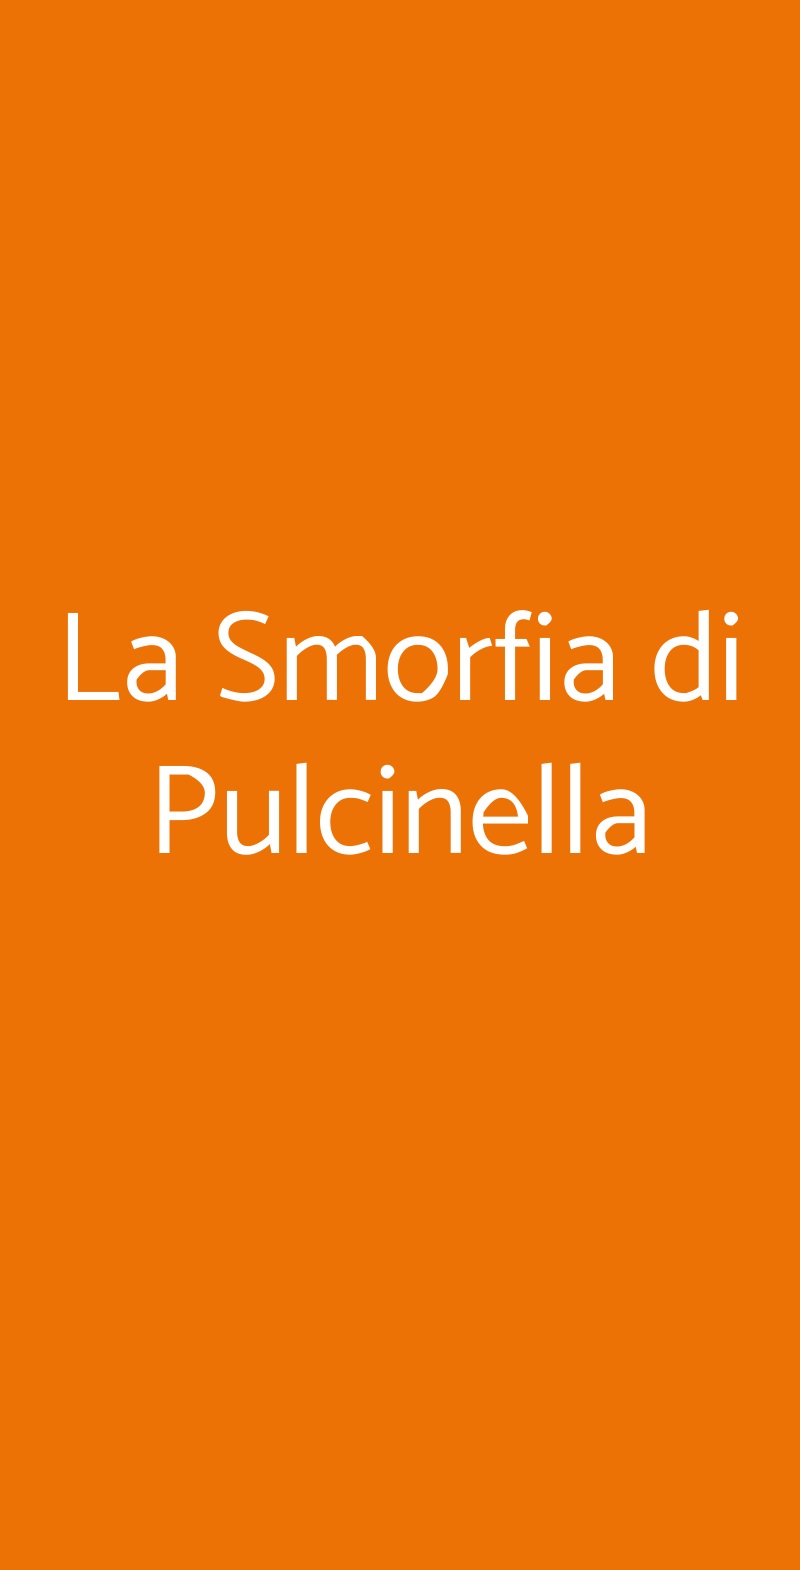 La Smorfia di Pulcinella Lombardore menù 1 pagina